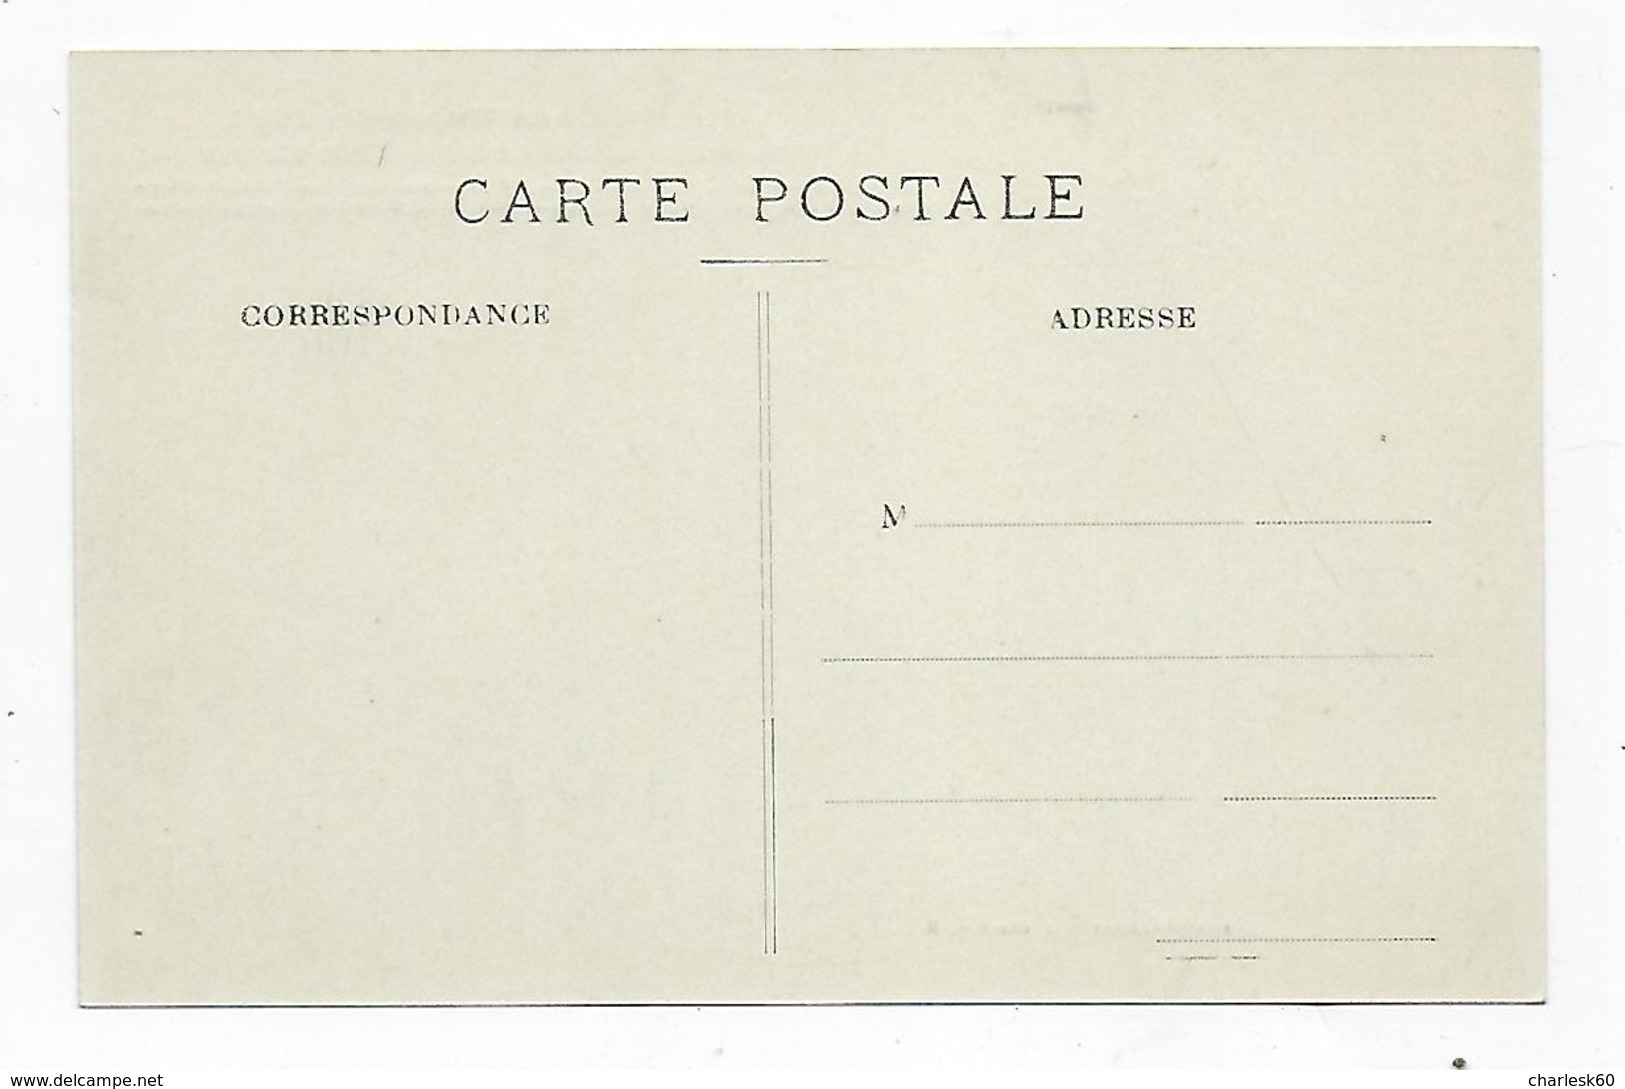 CPA - 60 - Millénaire Normand - 1911 - Saint Clair Sur Epte - Église - 911 - Rollon - Charles Le Simple - Saint-Clair-sur-Epte